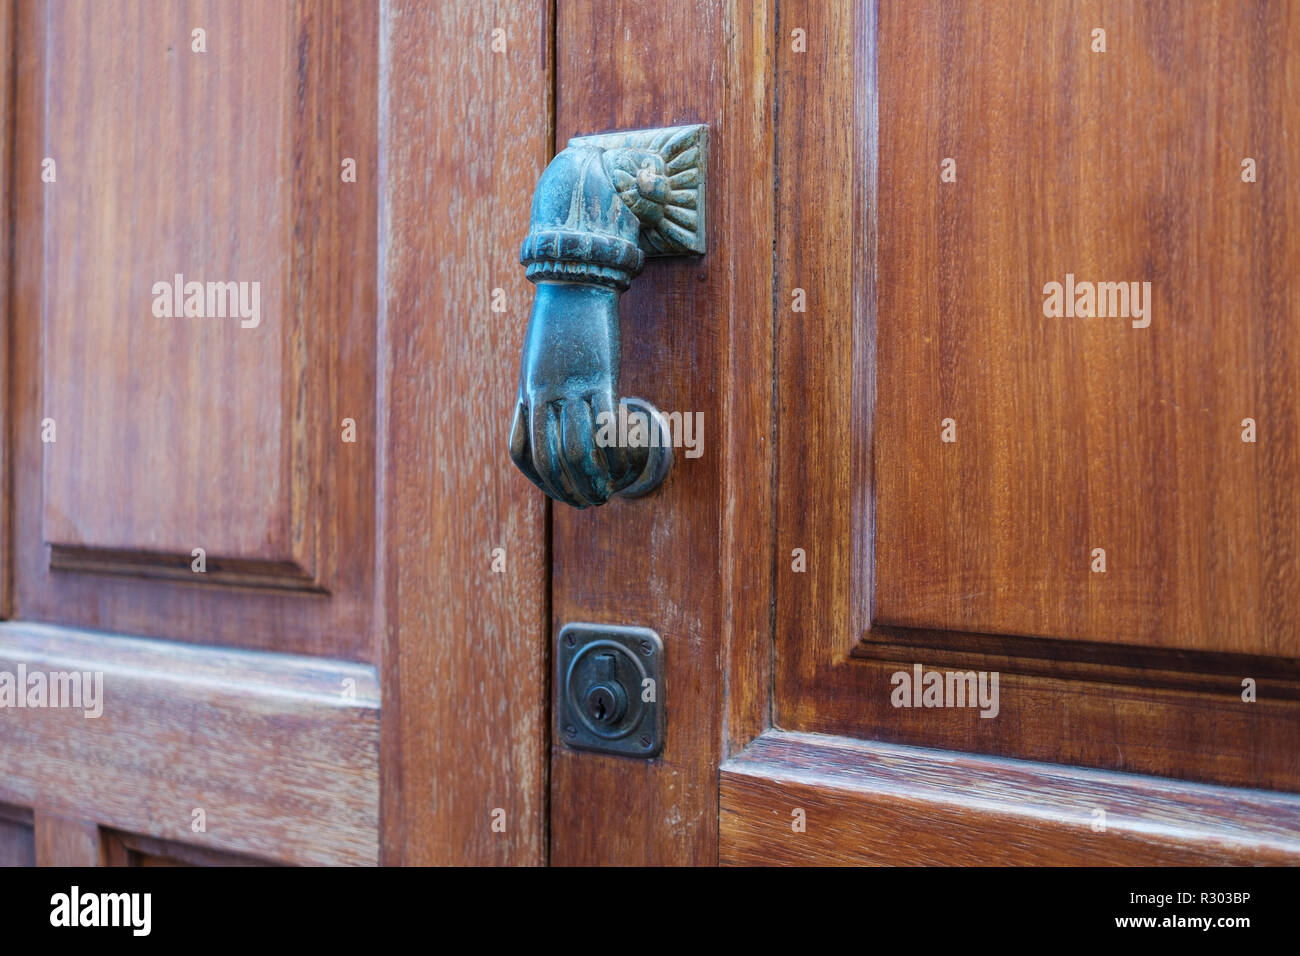 door knob, hand shape knocking door knob Stock Photo